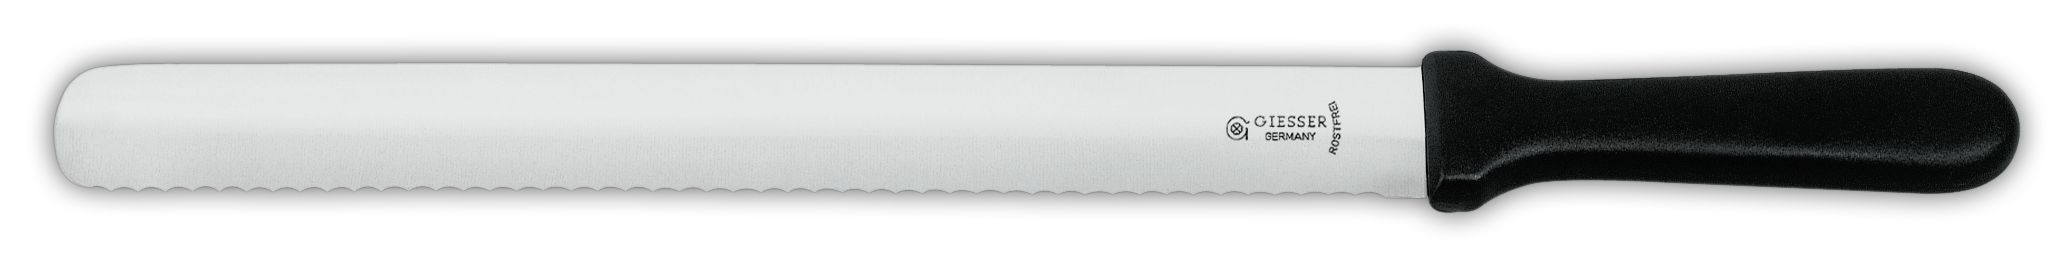 Нож для выпечки 8137wz, волнистое лезвие, 36 см,  черная рукоятка